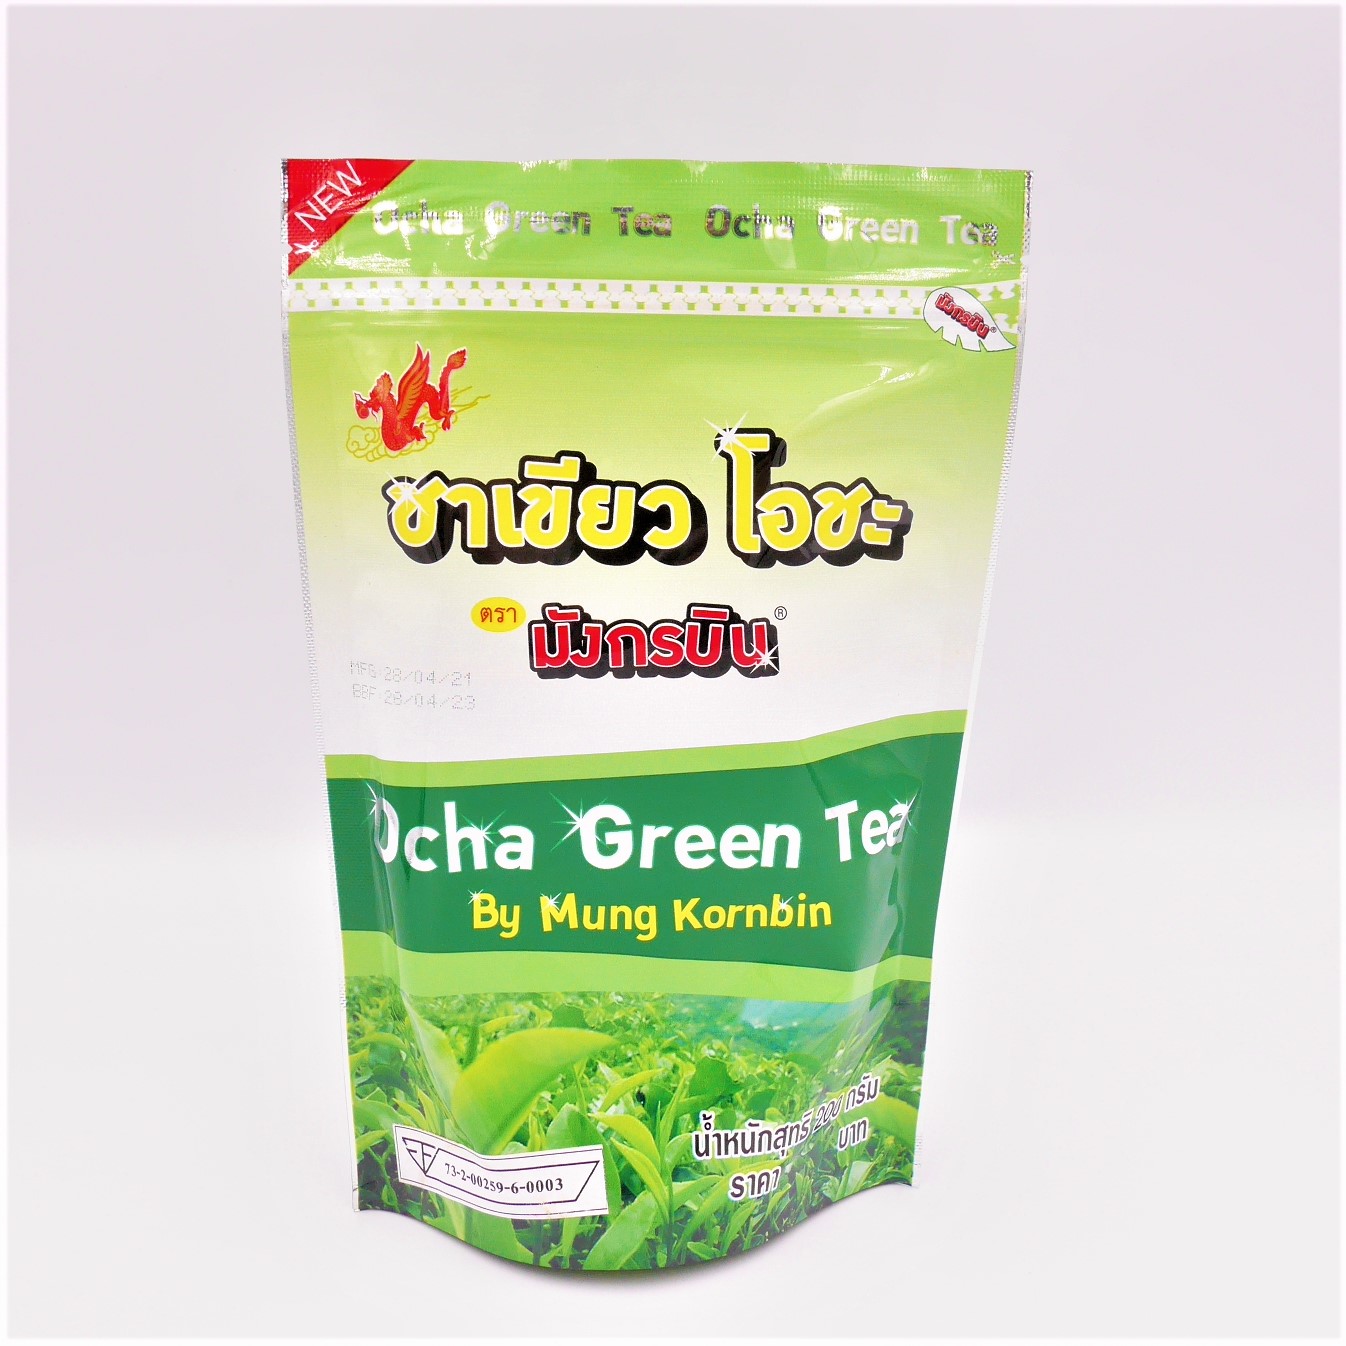 ชาเขียว โอชะ ตรามังกรบิน 200กรัม Ocha Green Tea รหัส 0770